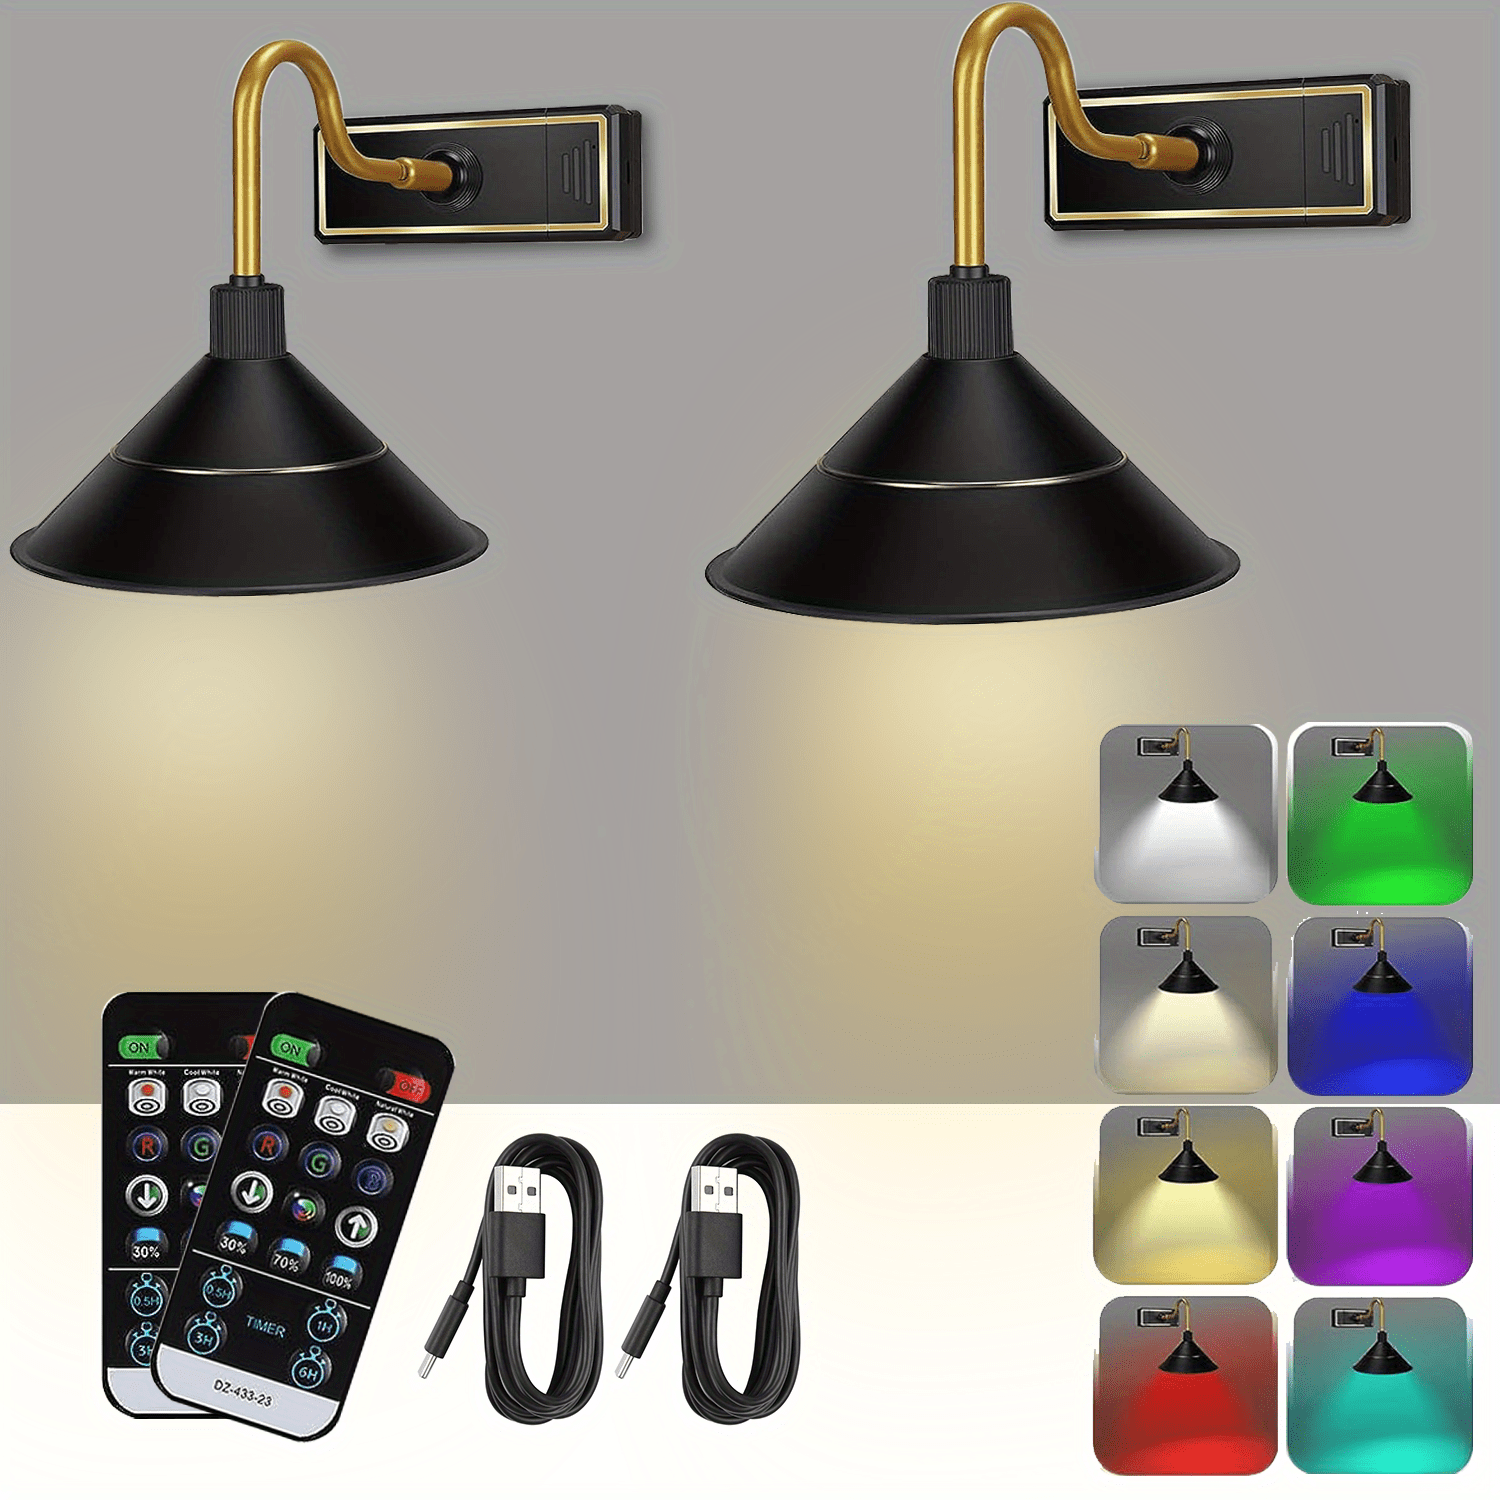 Akku Wandleuchte Innen Batteriebetrieben, USB Wiederaufladbare RGB  Wandlampe mit Fernbedienung, Dimmbar 16 Farben RGB Ambiente Beleuchtung mit  Timer-Funktion, Kabellose Wandleuchten für Schlafzimmer : :  Beleuchtung